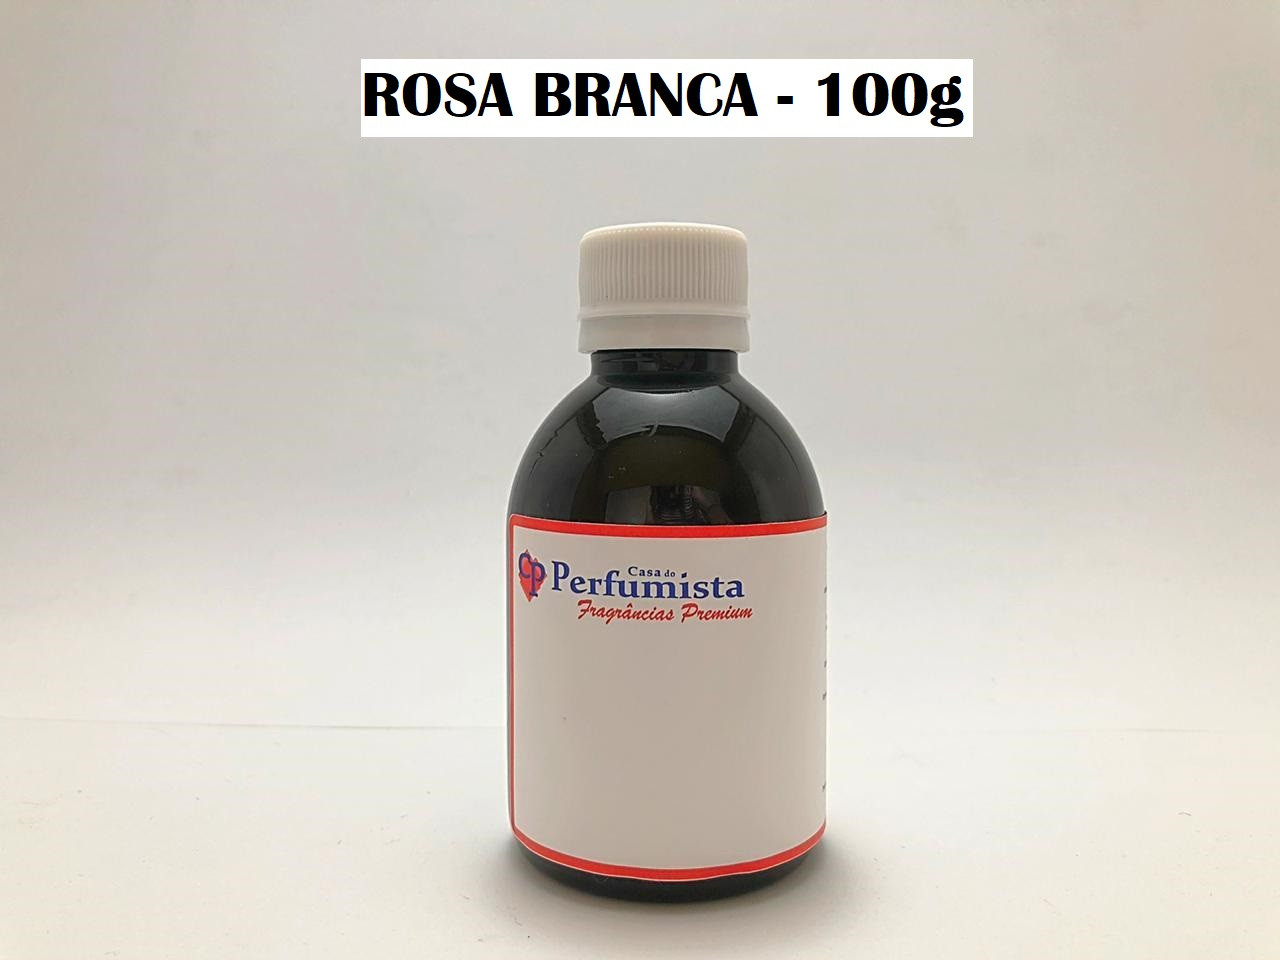 ROSA BRANCA - 100g